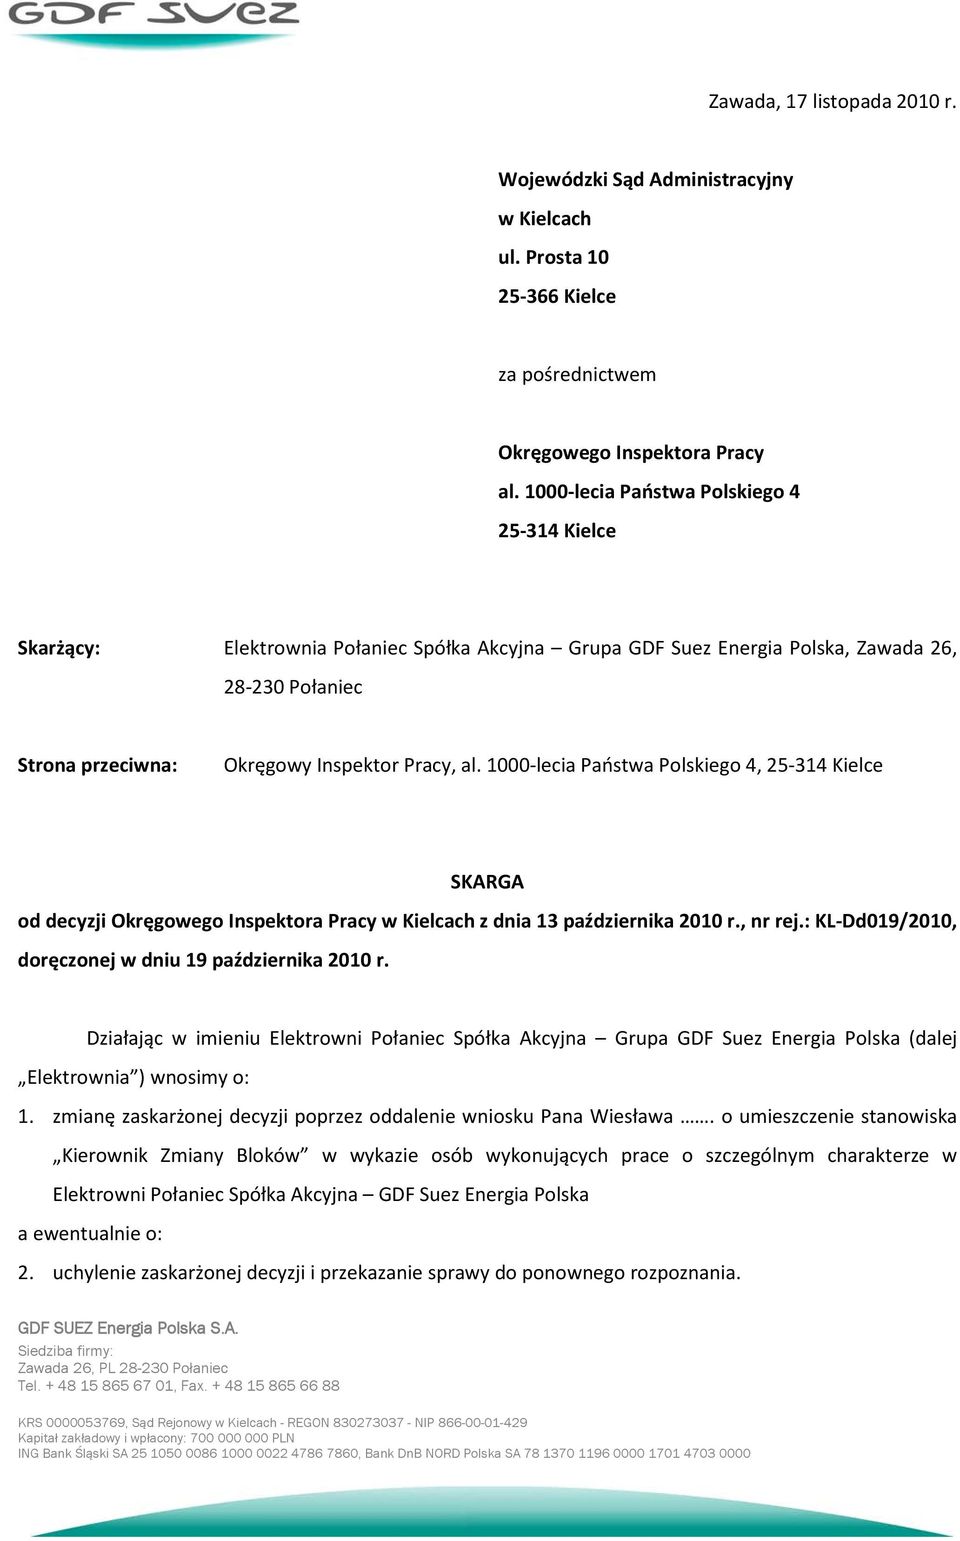 1000-lecia Państwa Polskiego 4, 25-314 Kielce SKARGA od decyzji Okręgowego Inspektora Pracy w Kielcach z dnia 13 października 2010 r., nr rej.: KL-Dd019/2010, doręczonej w dniu 19 października 2010 r.